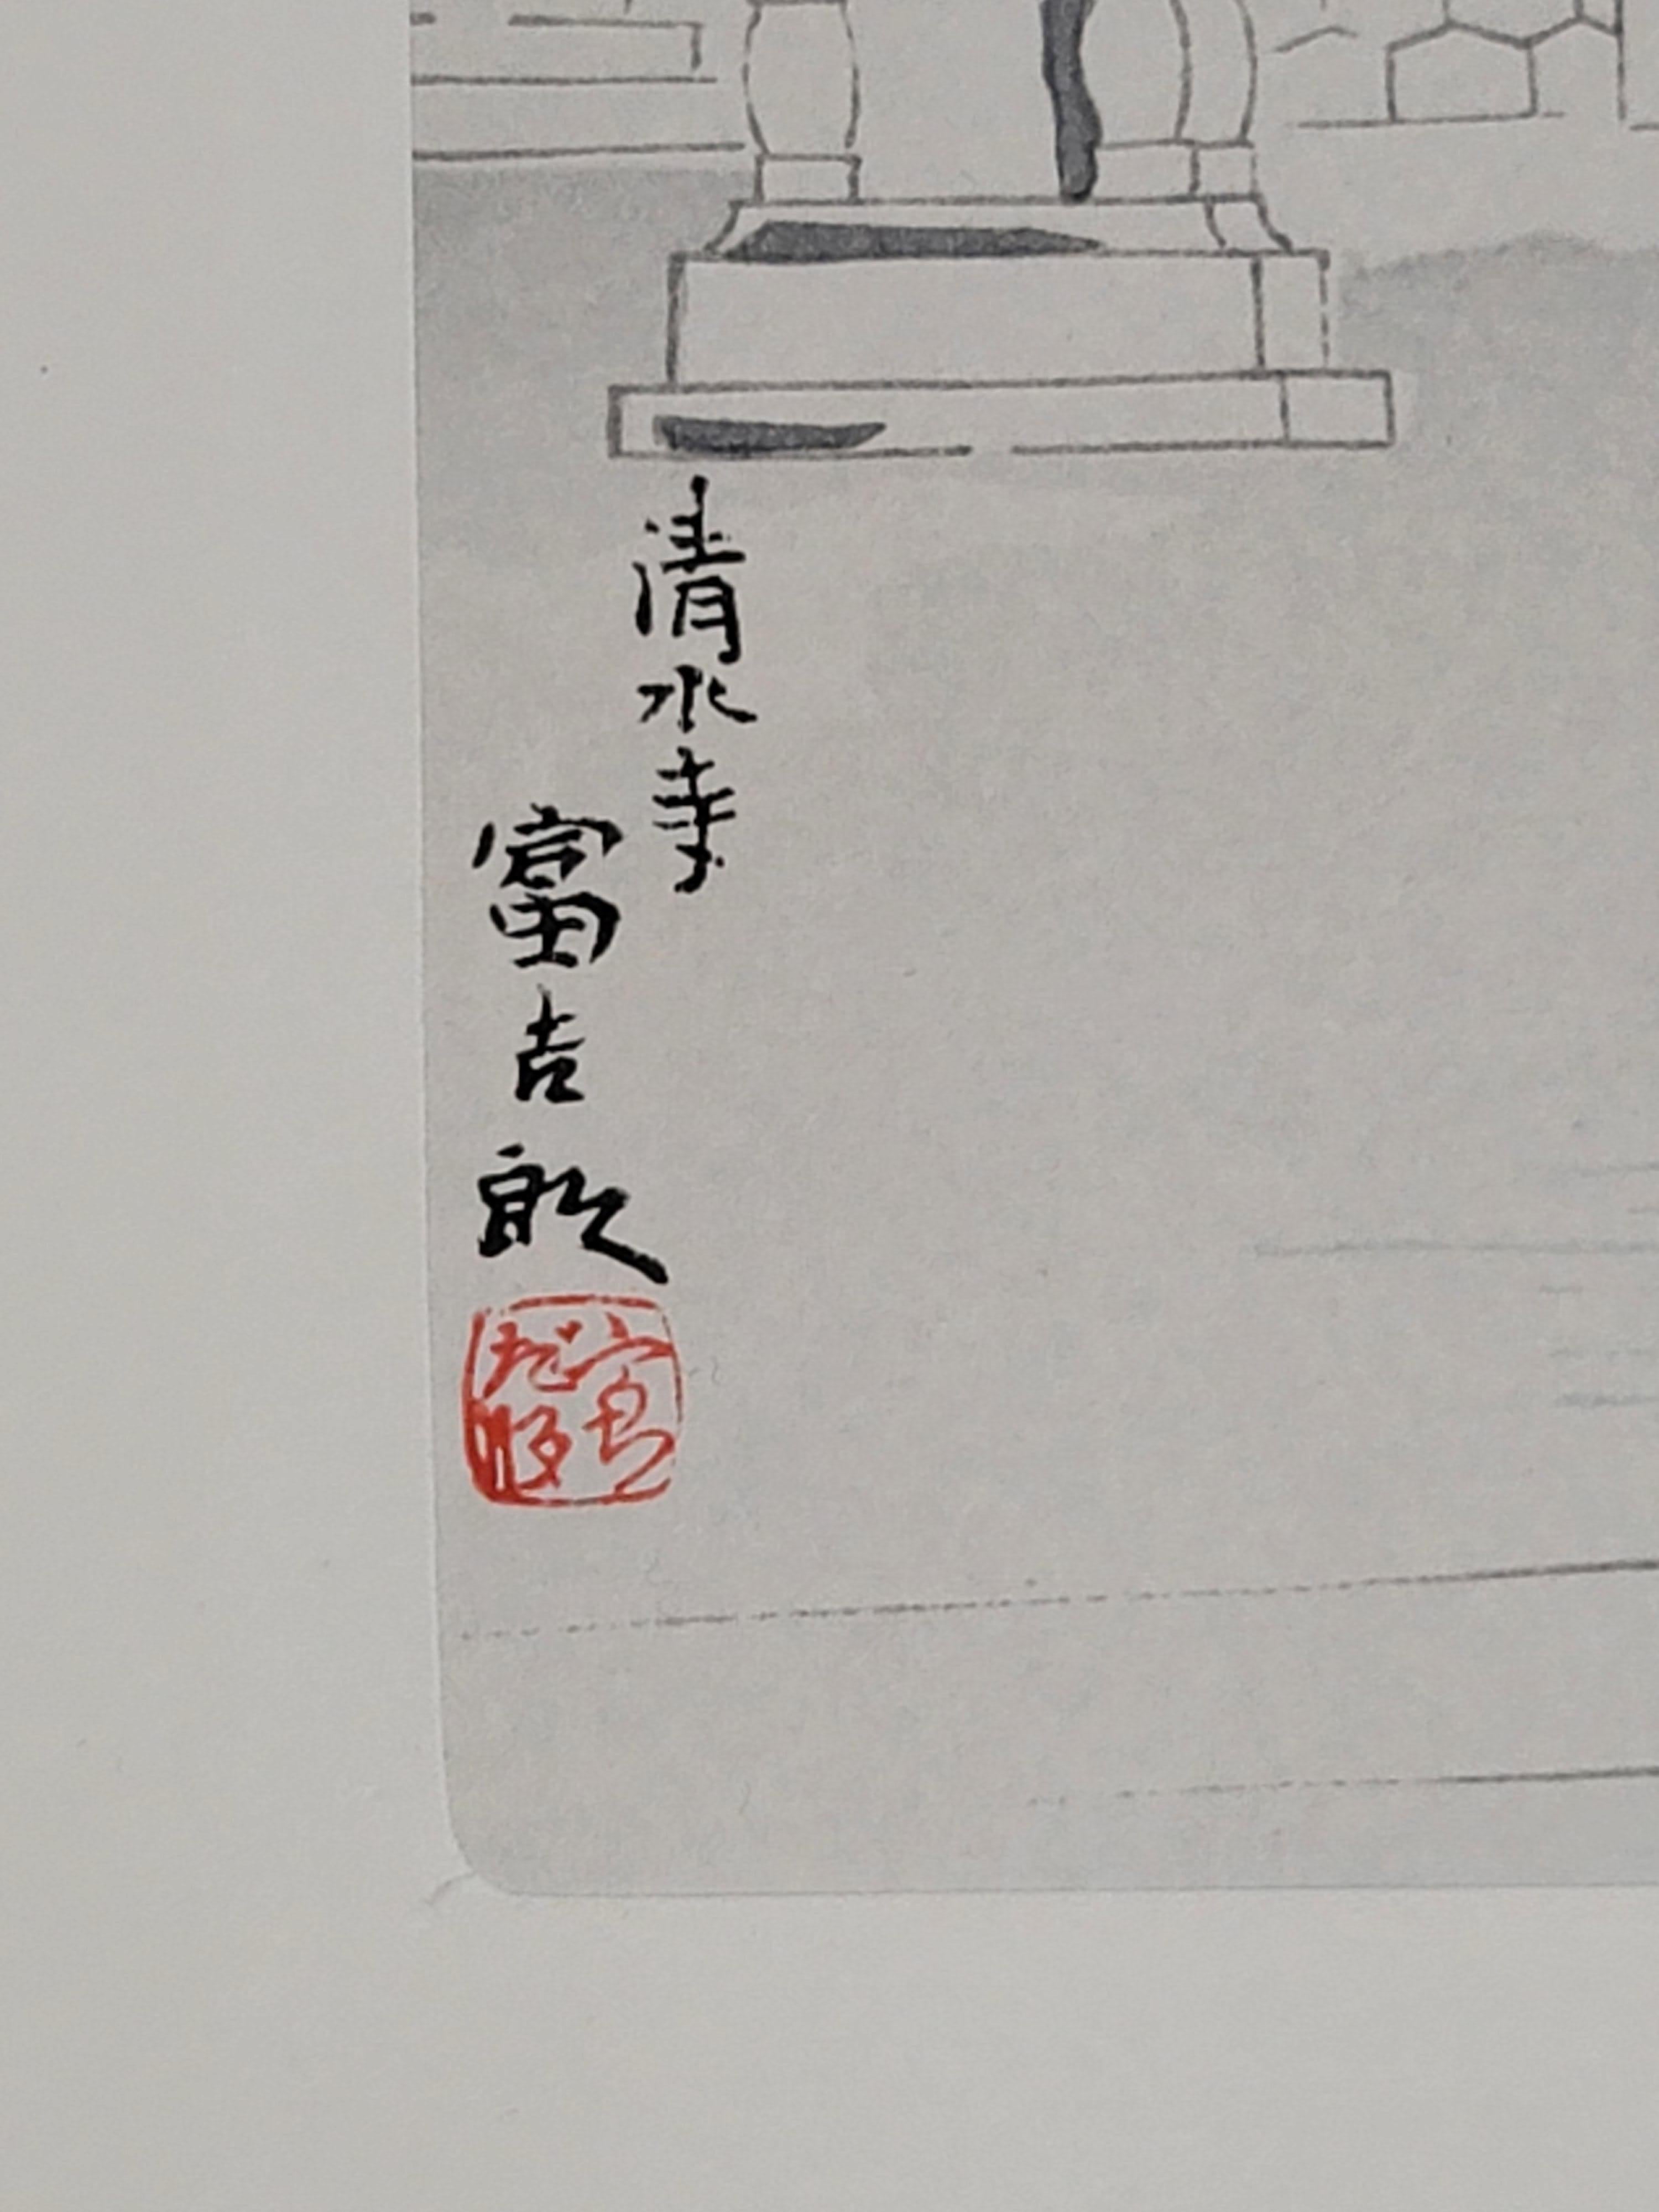 Über den Künstler:

Die Kunst von Tomikichiro Tokuriki (1902-1999) ist eine wichtige Brücke zwischen den beiden großen Bewegungen der japanischen Kunst des frühen zwanzigsten Jahrhunderts: Shin Hanga und Sosaku Hanga. Wie die klassischen Shin